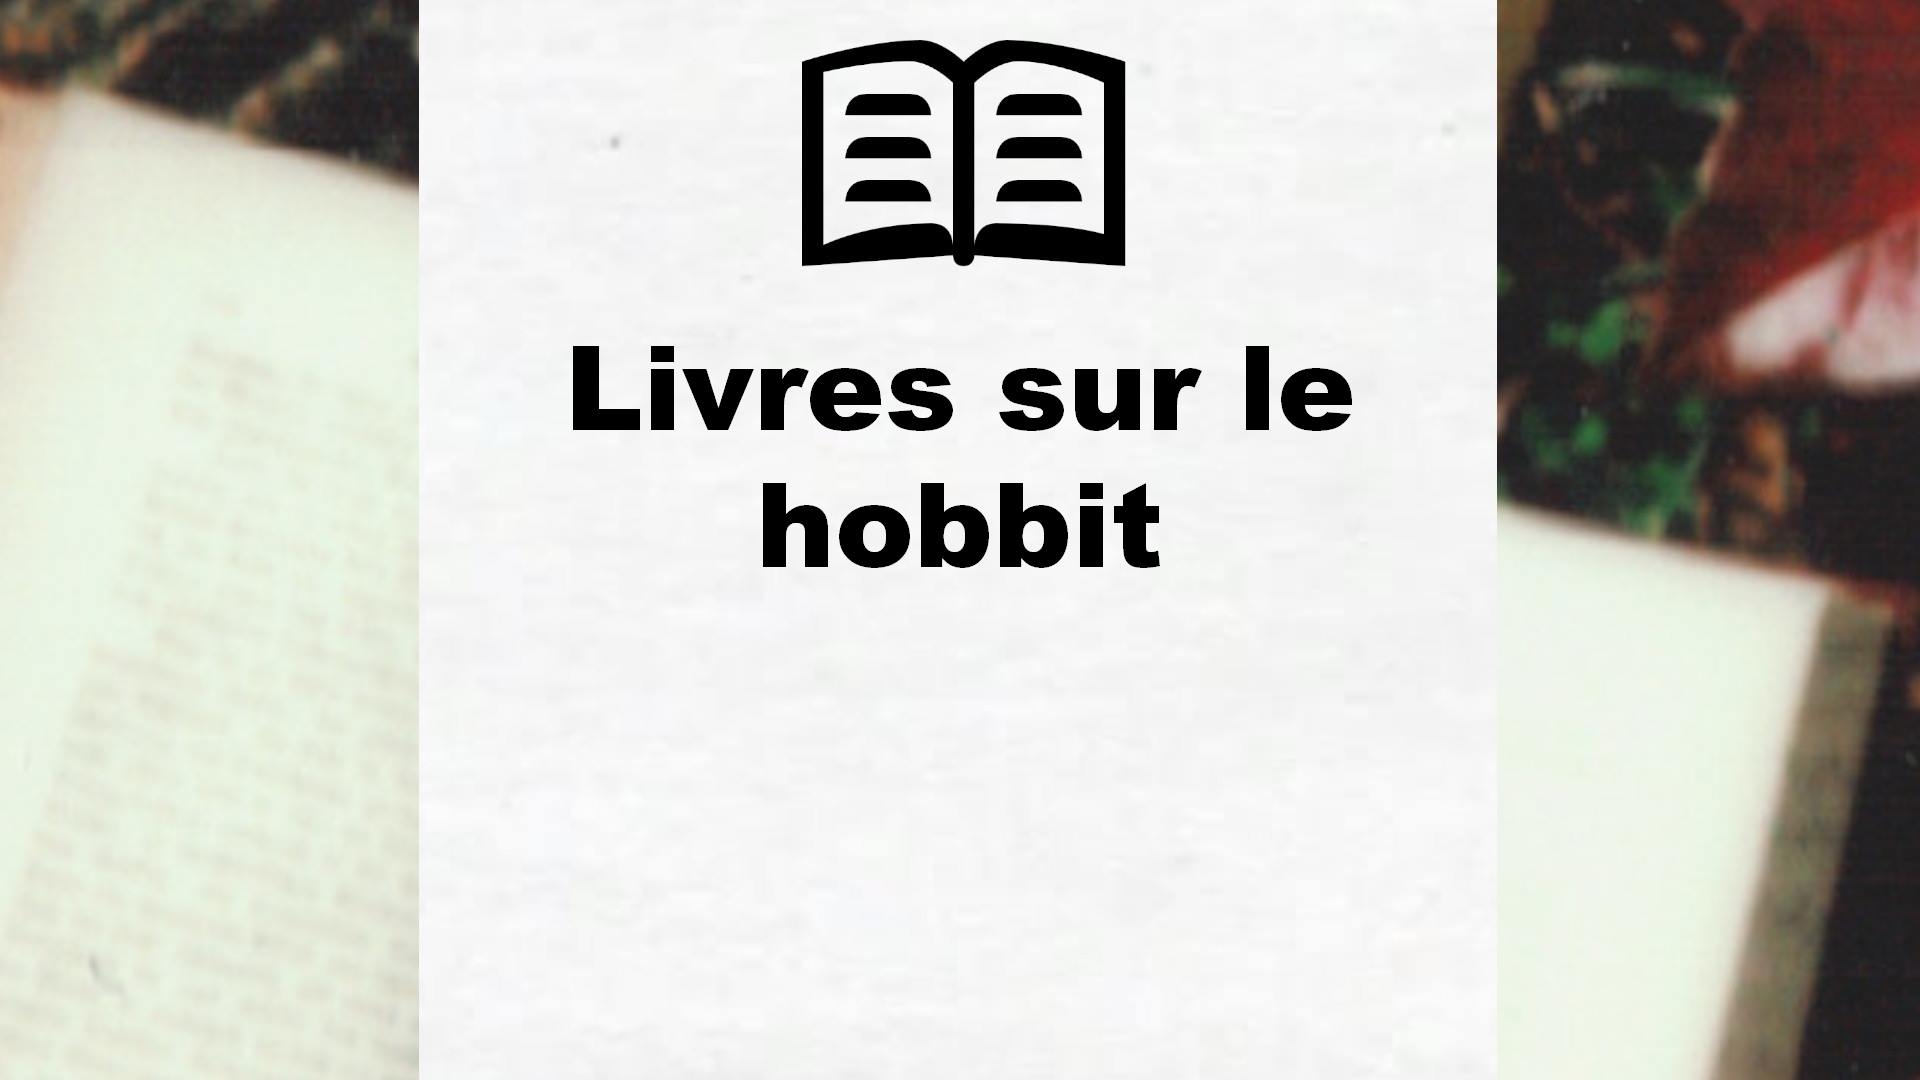 Livres sur le hobbit